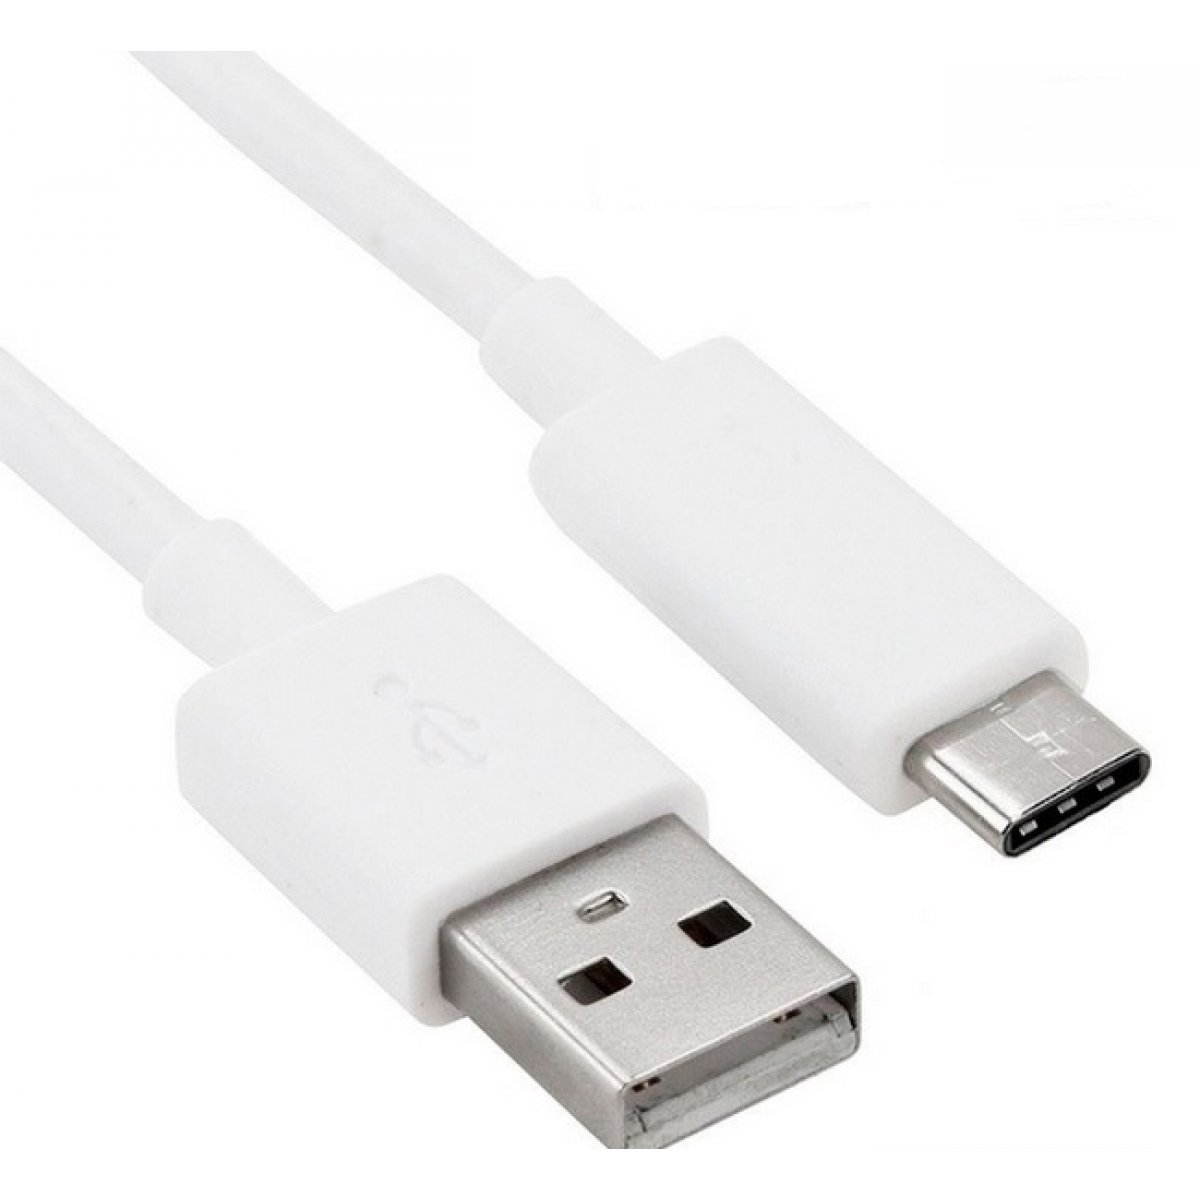 CABLE USB A/M - USB C/M 2.0 (1M) MOBILE +